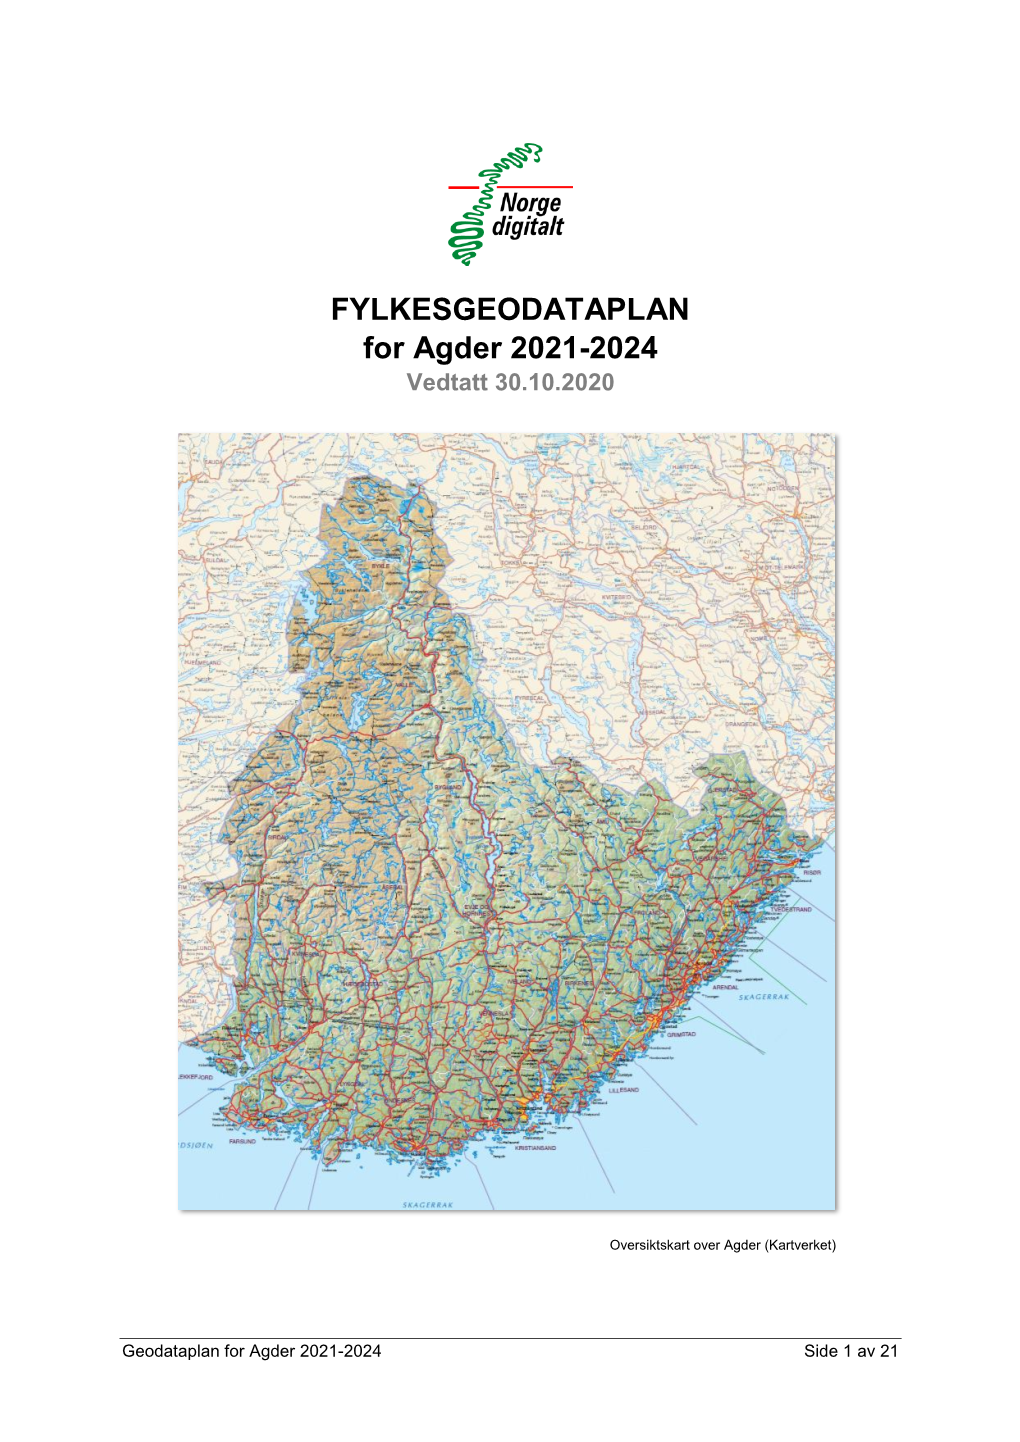 FYLKESGEODATAPLAN for Agder 2021-2024 Vedtatt 30.10.2020